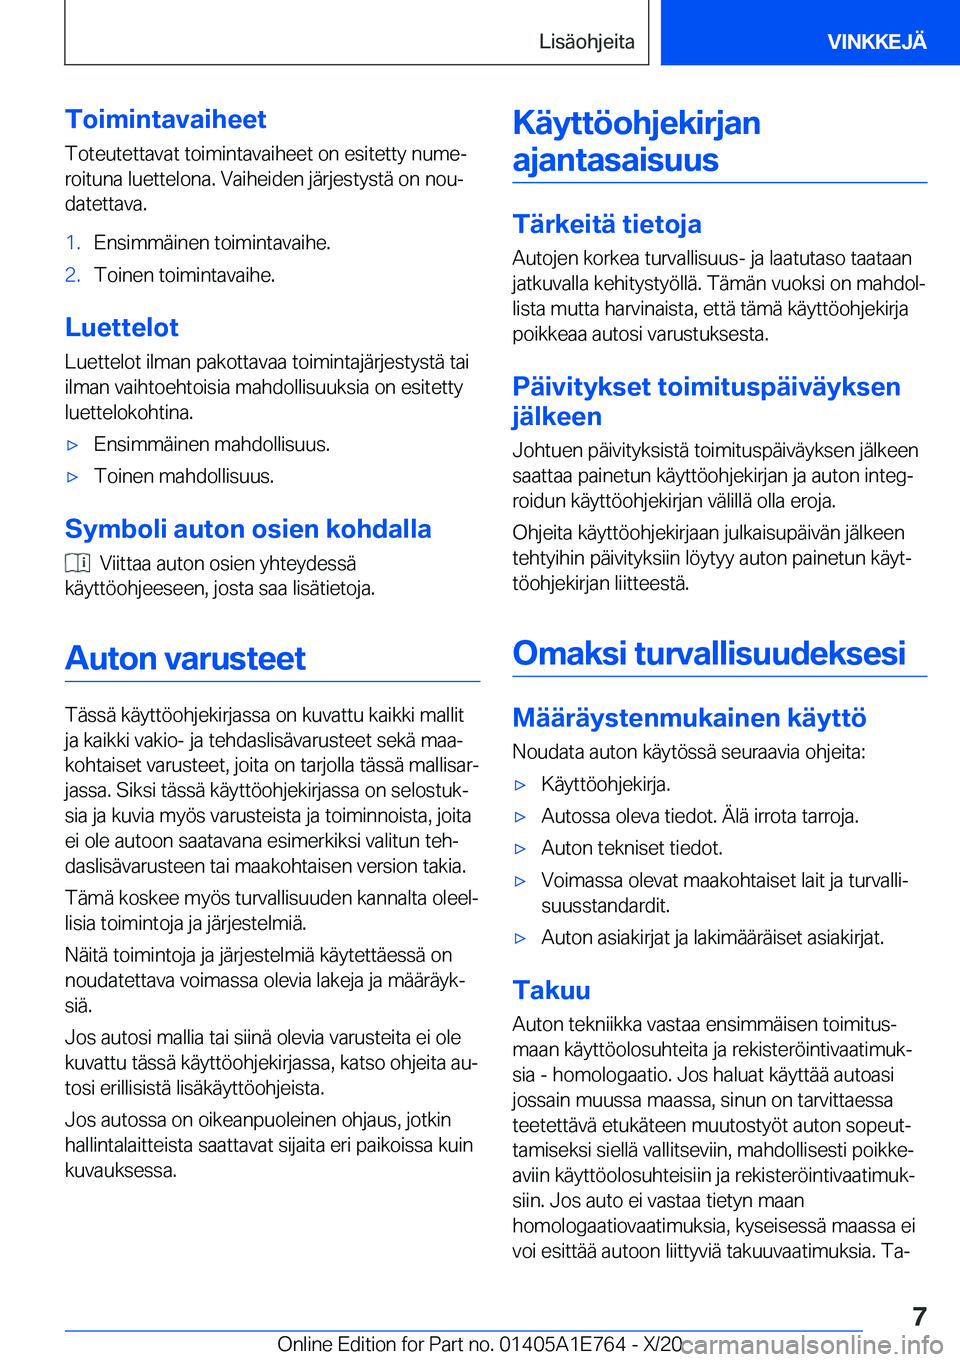 BMW X2 2021  Omistajan Käsikirja (in Finnish) �T�o�i�m�i�n�t�a�v�a�i�h�e�e�t�T�o�t�e�u�t�e�t�t�a�v�a�t��t�o�i�m�i�n�t�a�v�a�i�h�e�e�t��o�n��e�s�i�t�e�t�t�y��n�u�m�ej
�r�o�i�t�u�n�a��l�u�e�t�t�e�l�o�n�a�.��V�a�i�h�e�i�d�e�n��j�